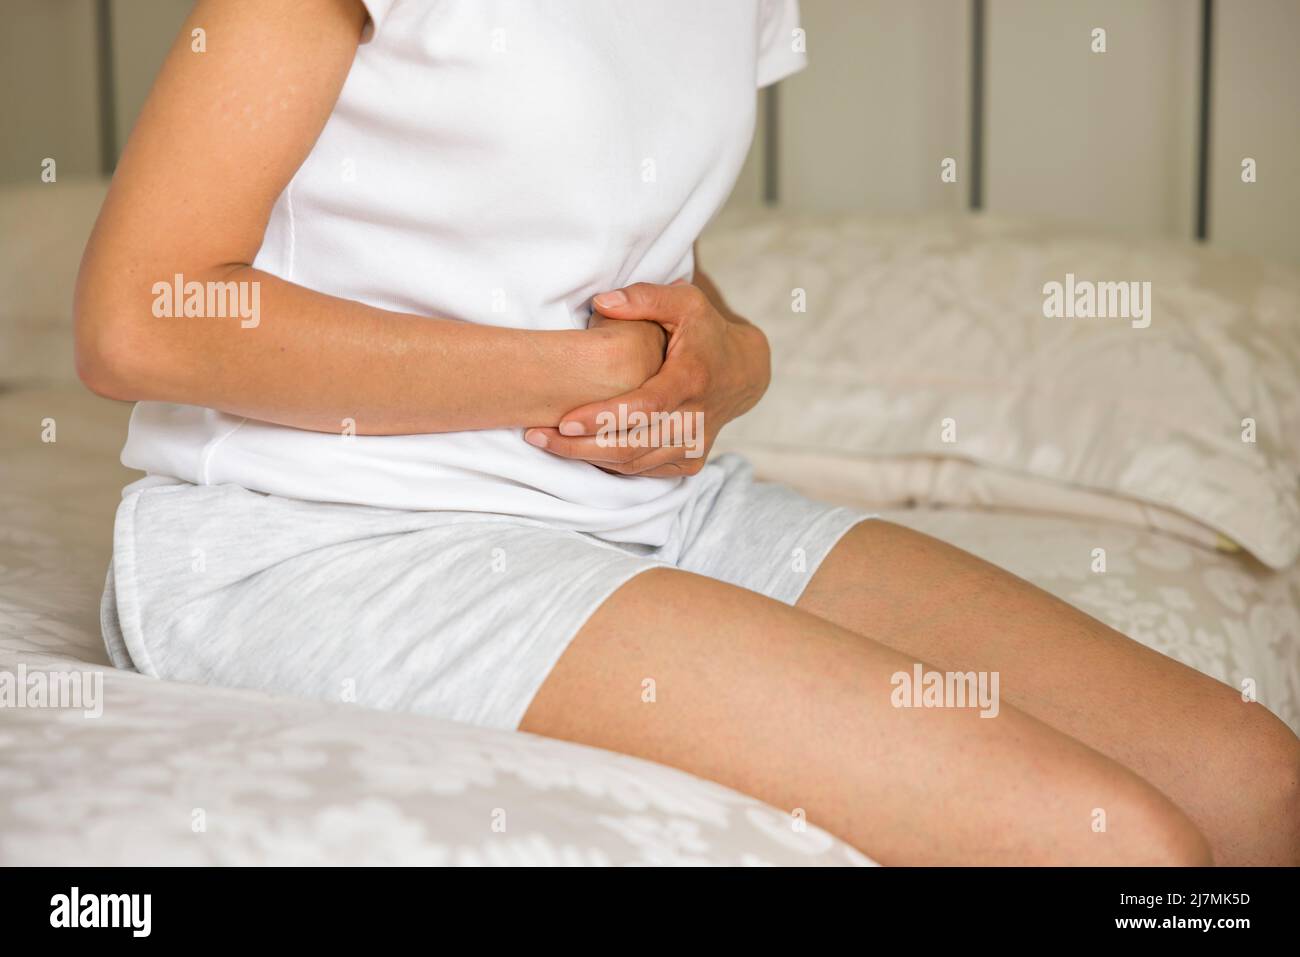 Dolor de estómago, mujer india asiática sosteniendo su estómago con dolor Foto de stock